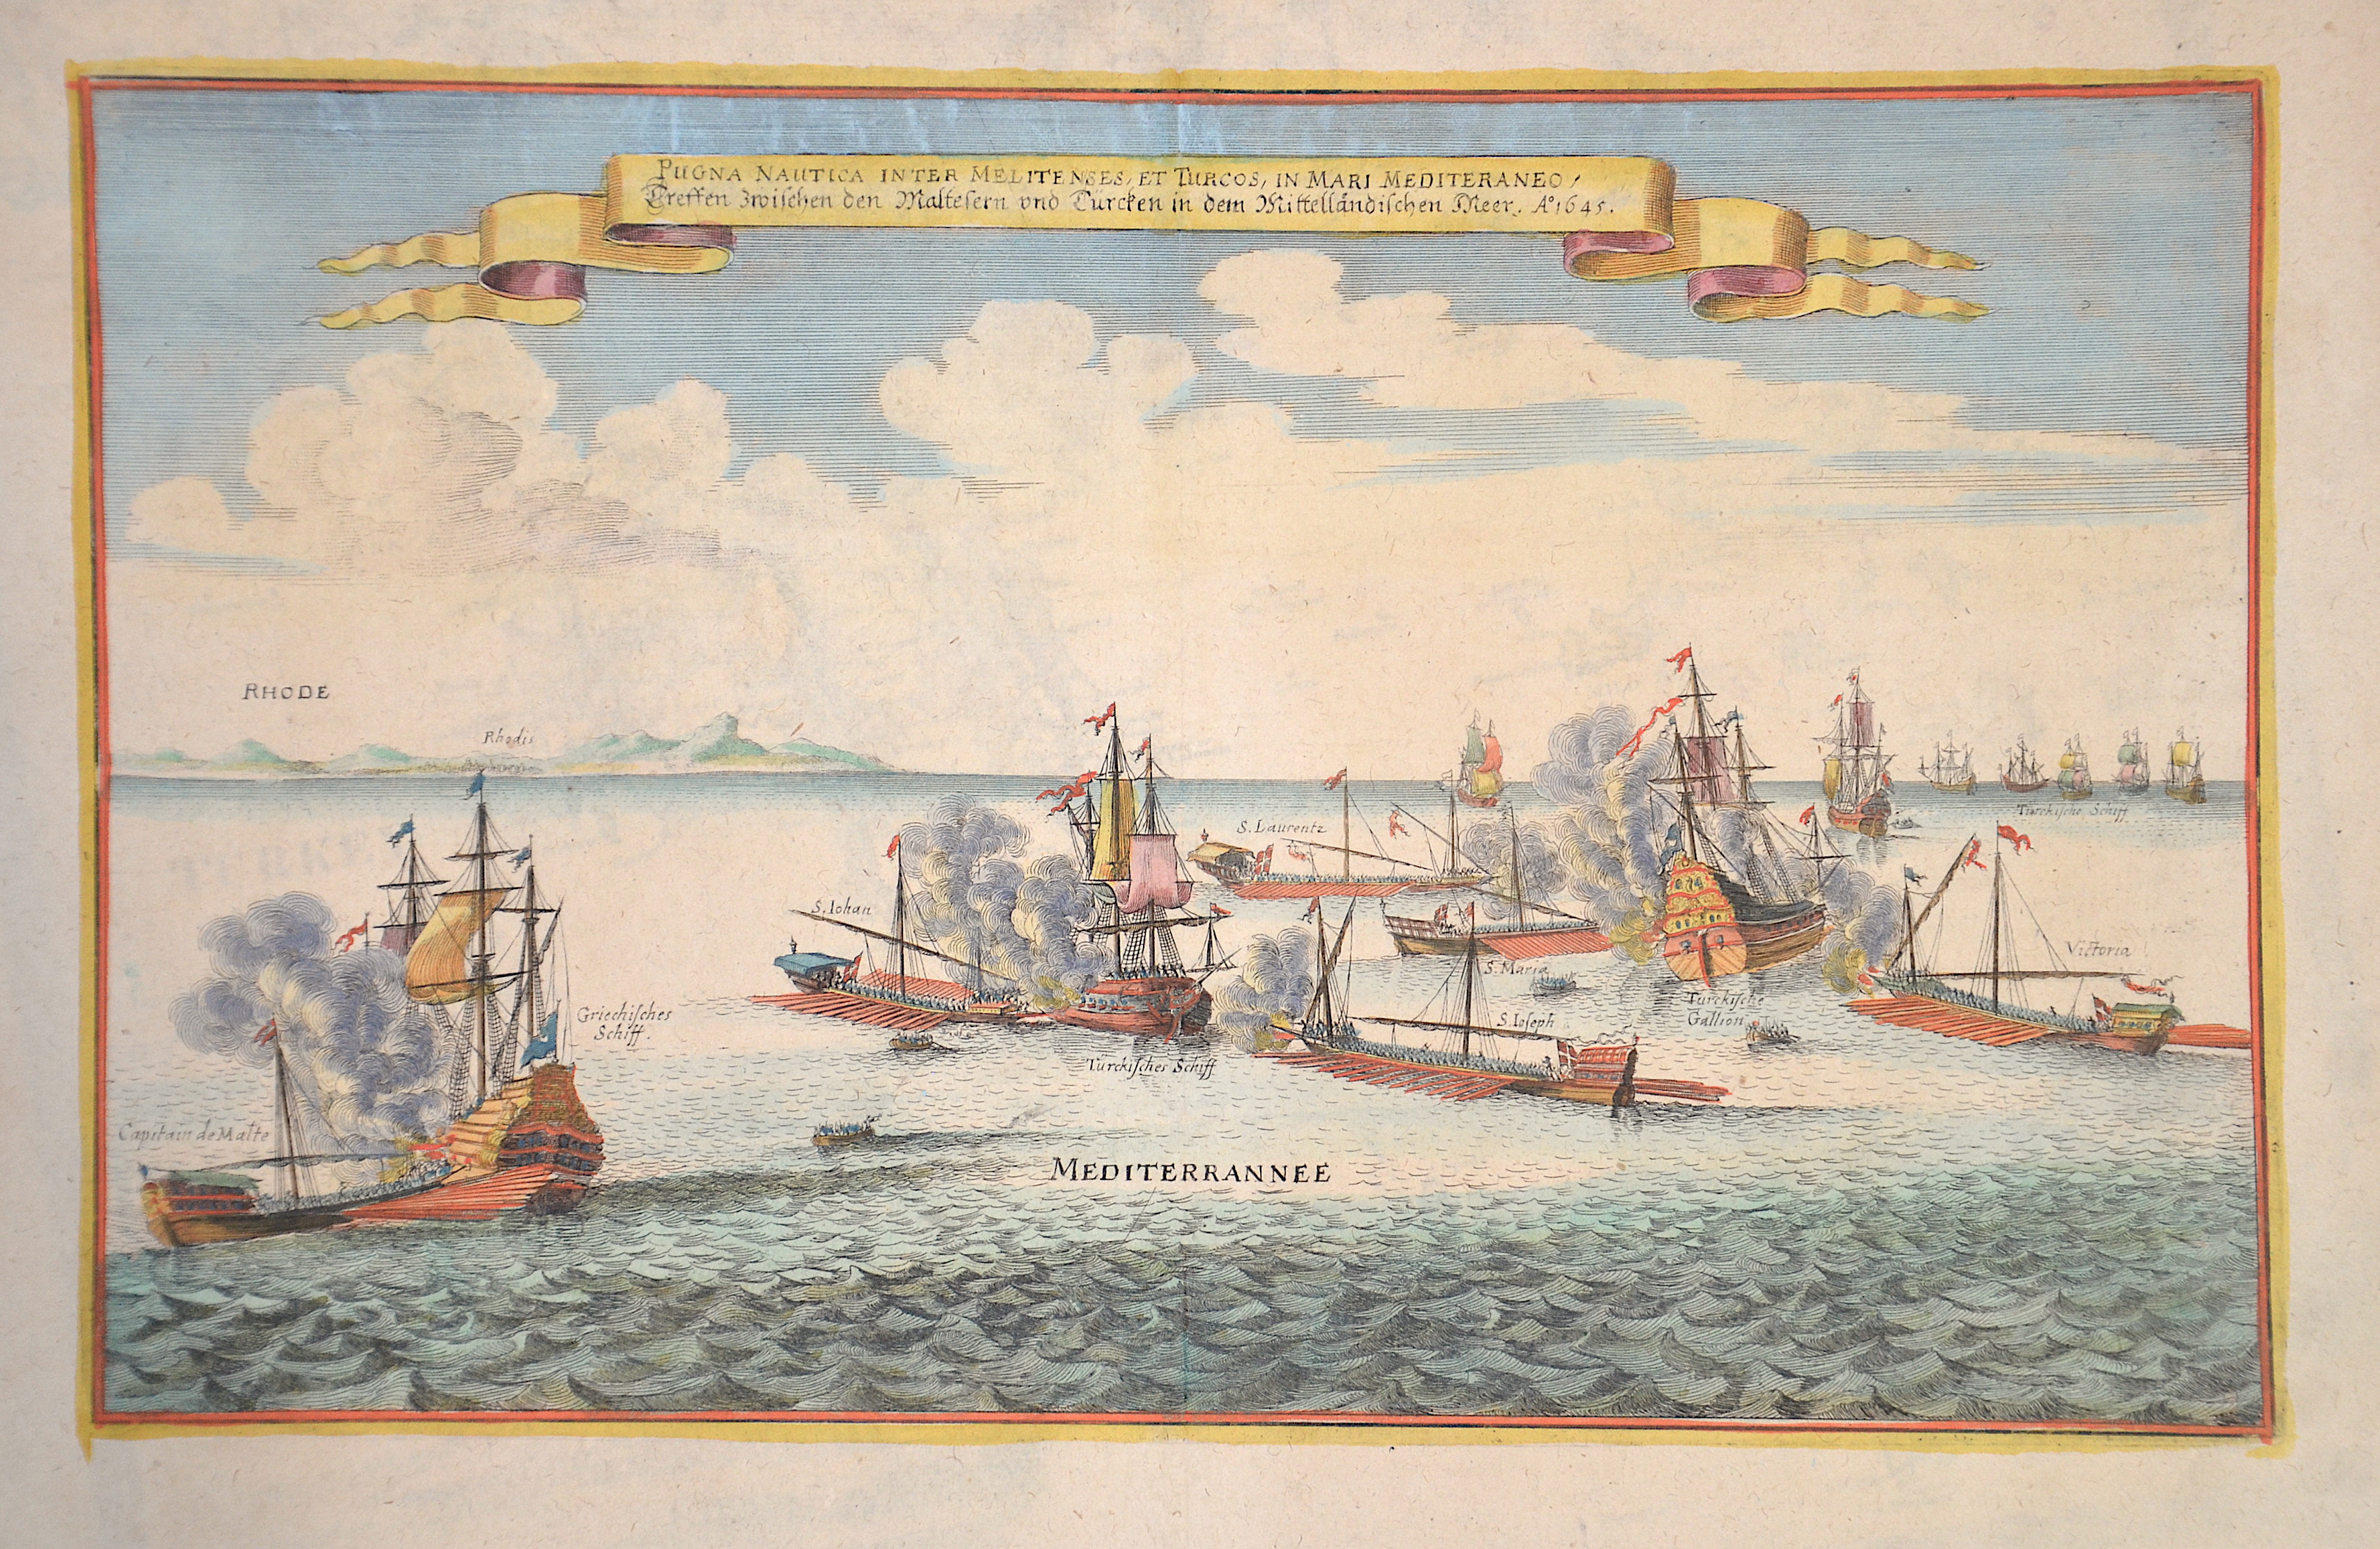 Merian Matthäus Pugna Nautica inter Melitenses, et Turcos, in Mari Mediteraneo / Treffen zwischen den Maltesern und Türcken in dem Mittellädischen Meer. Anno 1645.